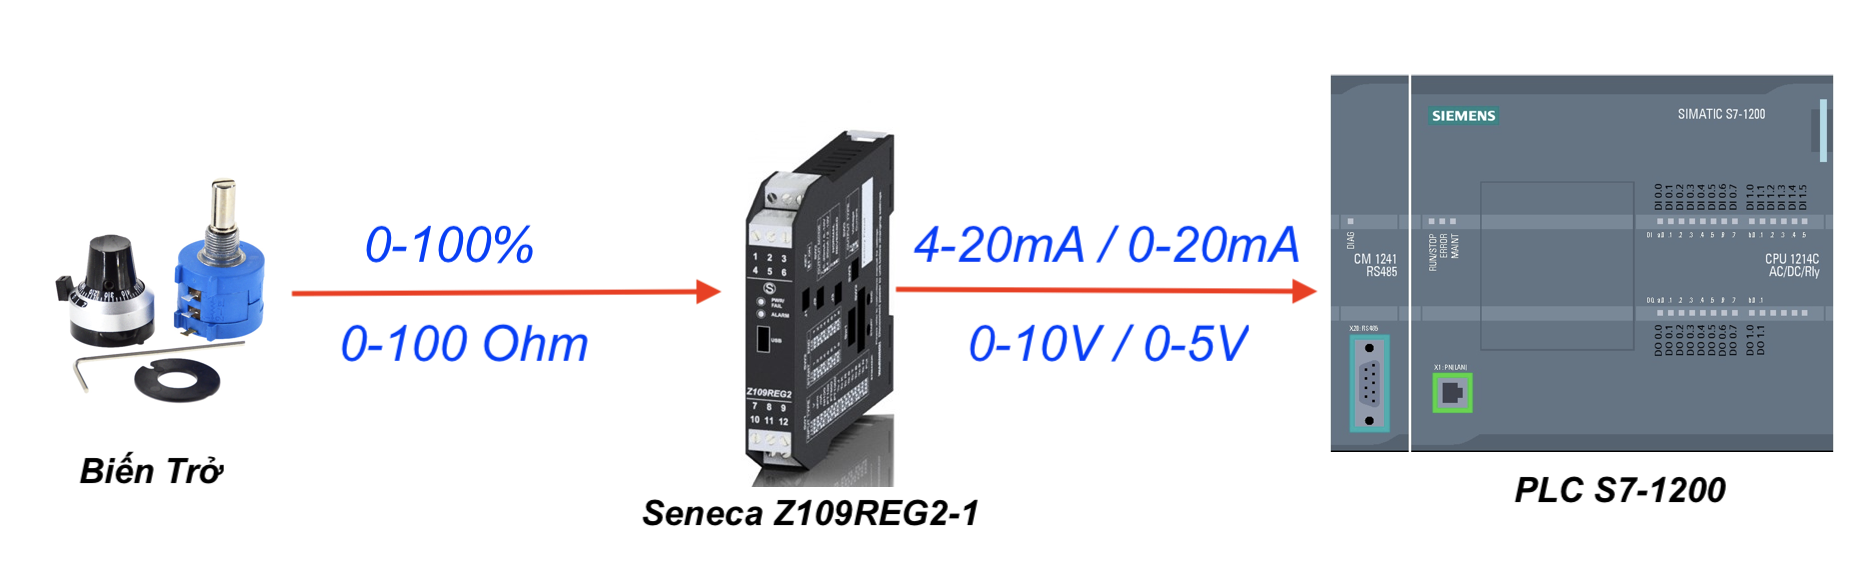 bộ chuyển đổi tín hiệu biến trở sang 4-20mA Z109REG2-1